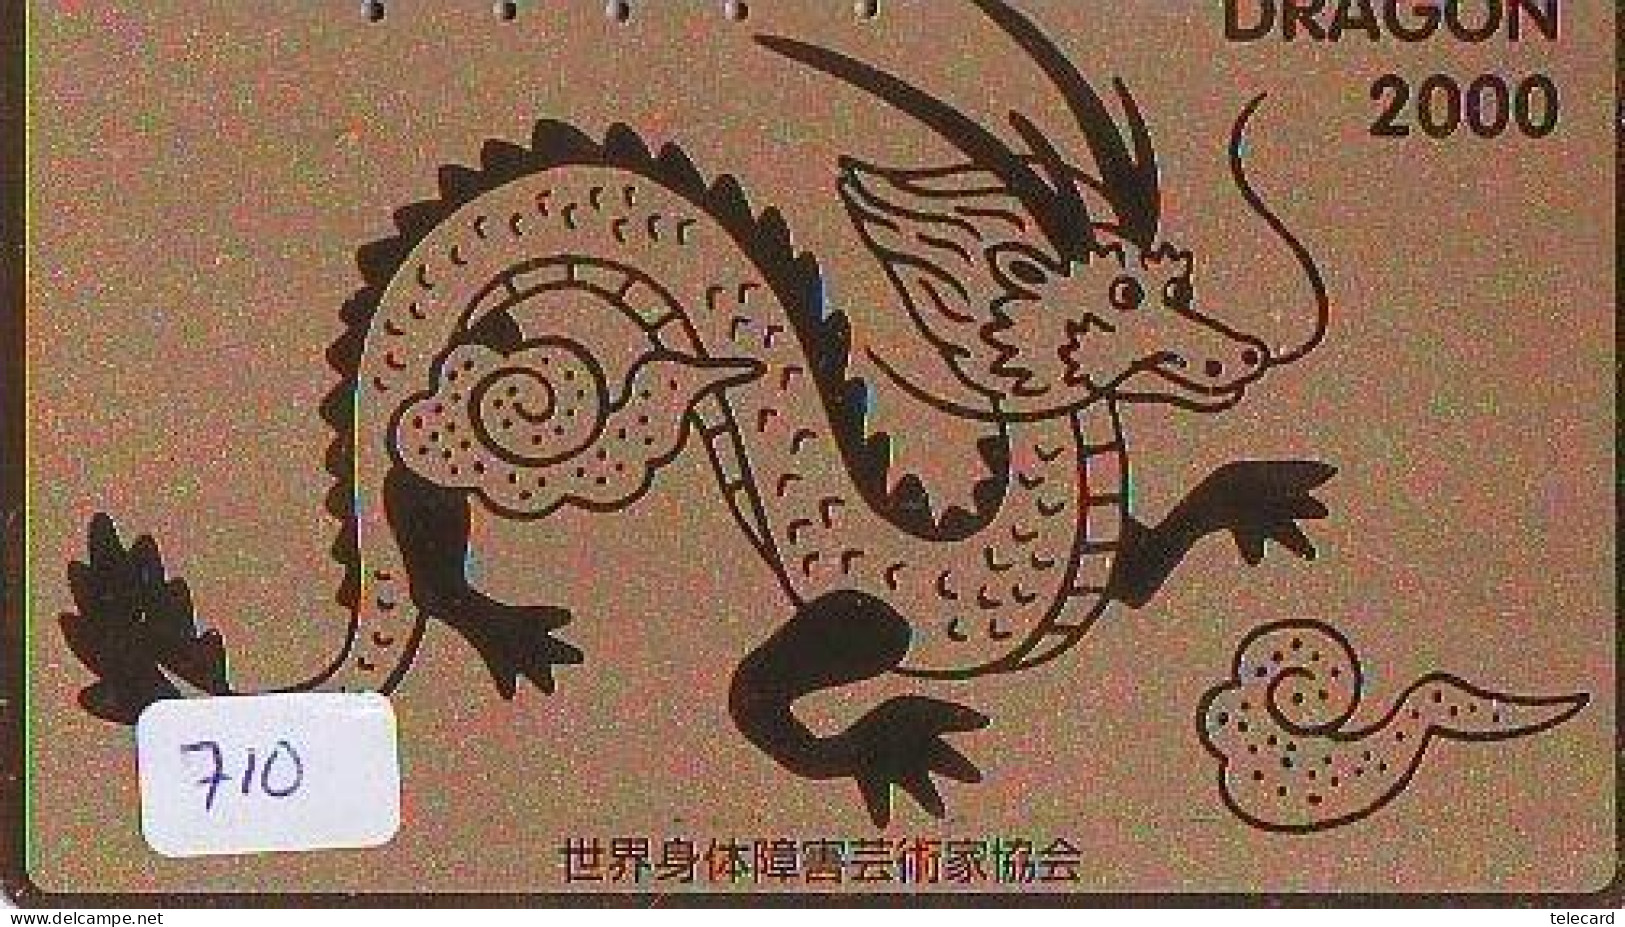 Télécarte Japon * DRAGON L'ESTRAGON DRACHE DRAGÓN DRAGO (710) Zodiaque - Zodiac Horoscope * Phonecard Japan - Zodiaco